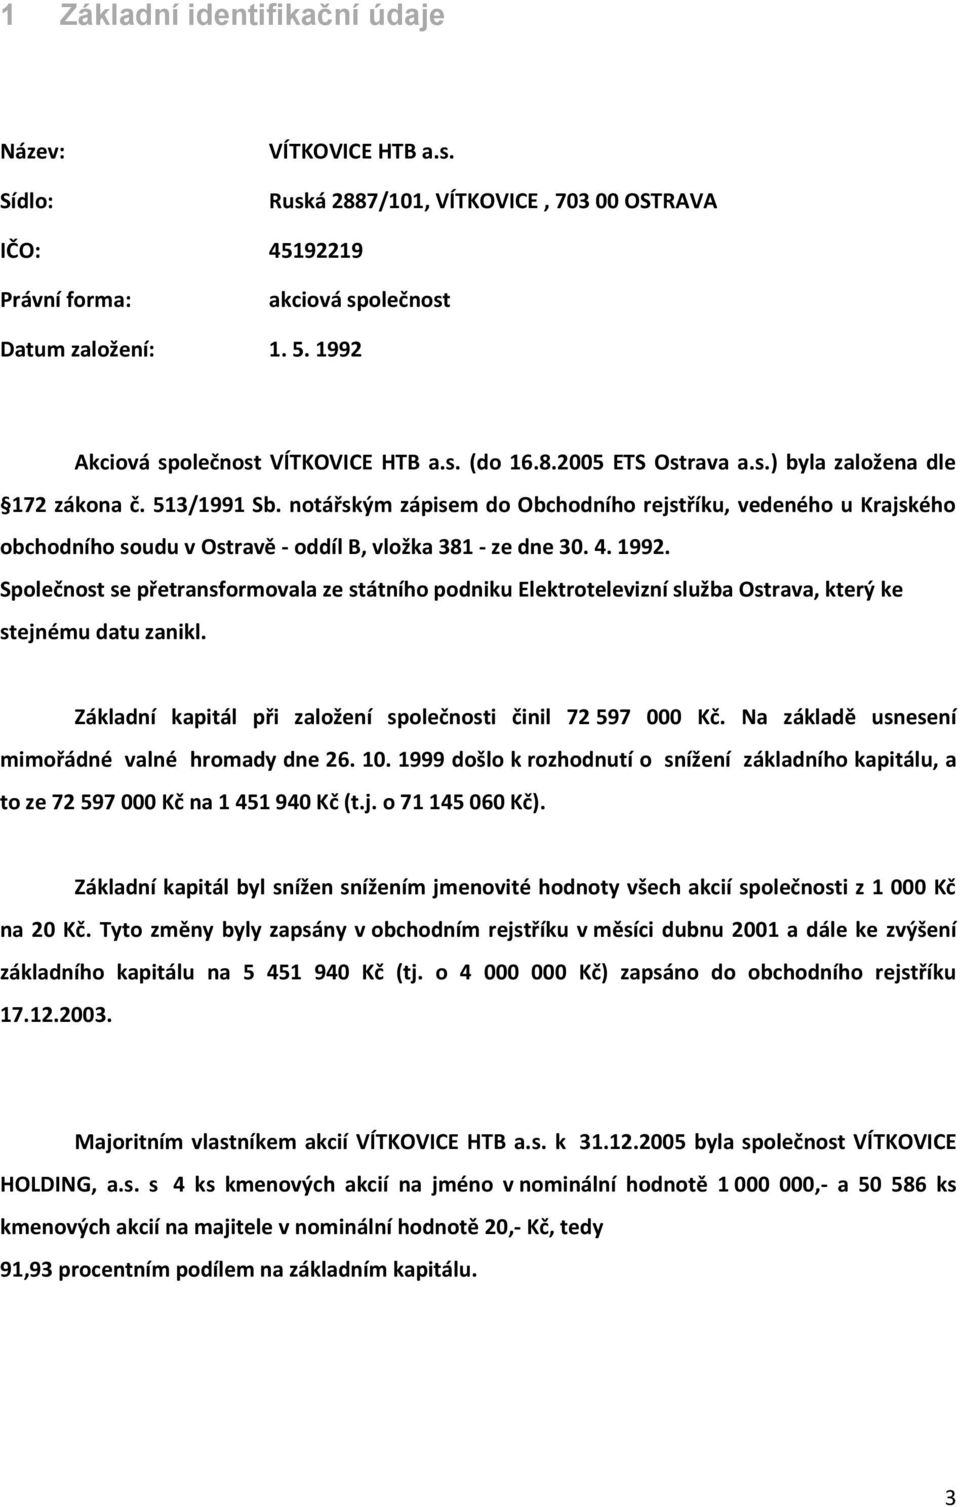 notářským zápisem do Obchodního rejstříku, vedeného u Krajského obchodního soudu v Ostravě - oddíl B, vložka 381 - ze dne 30. 4. 1992.